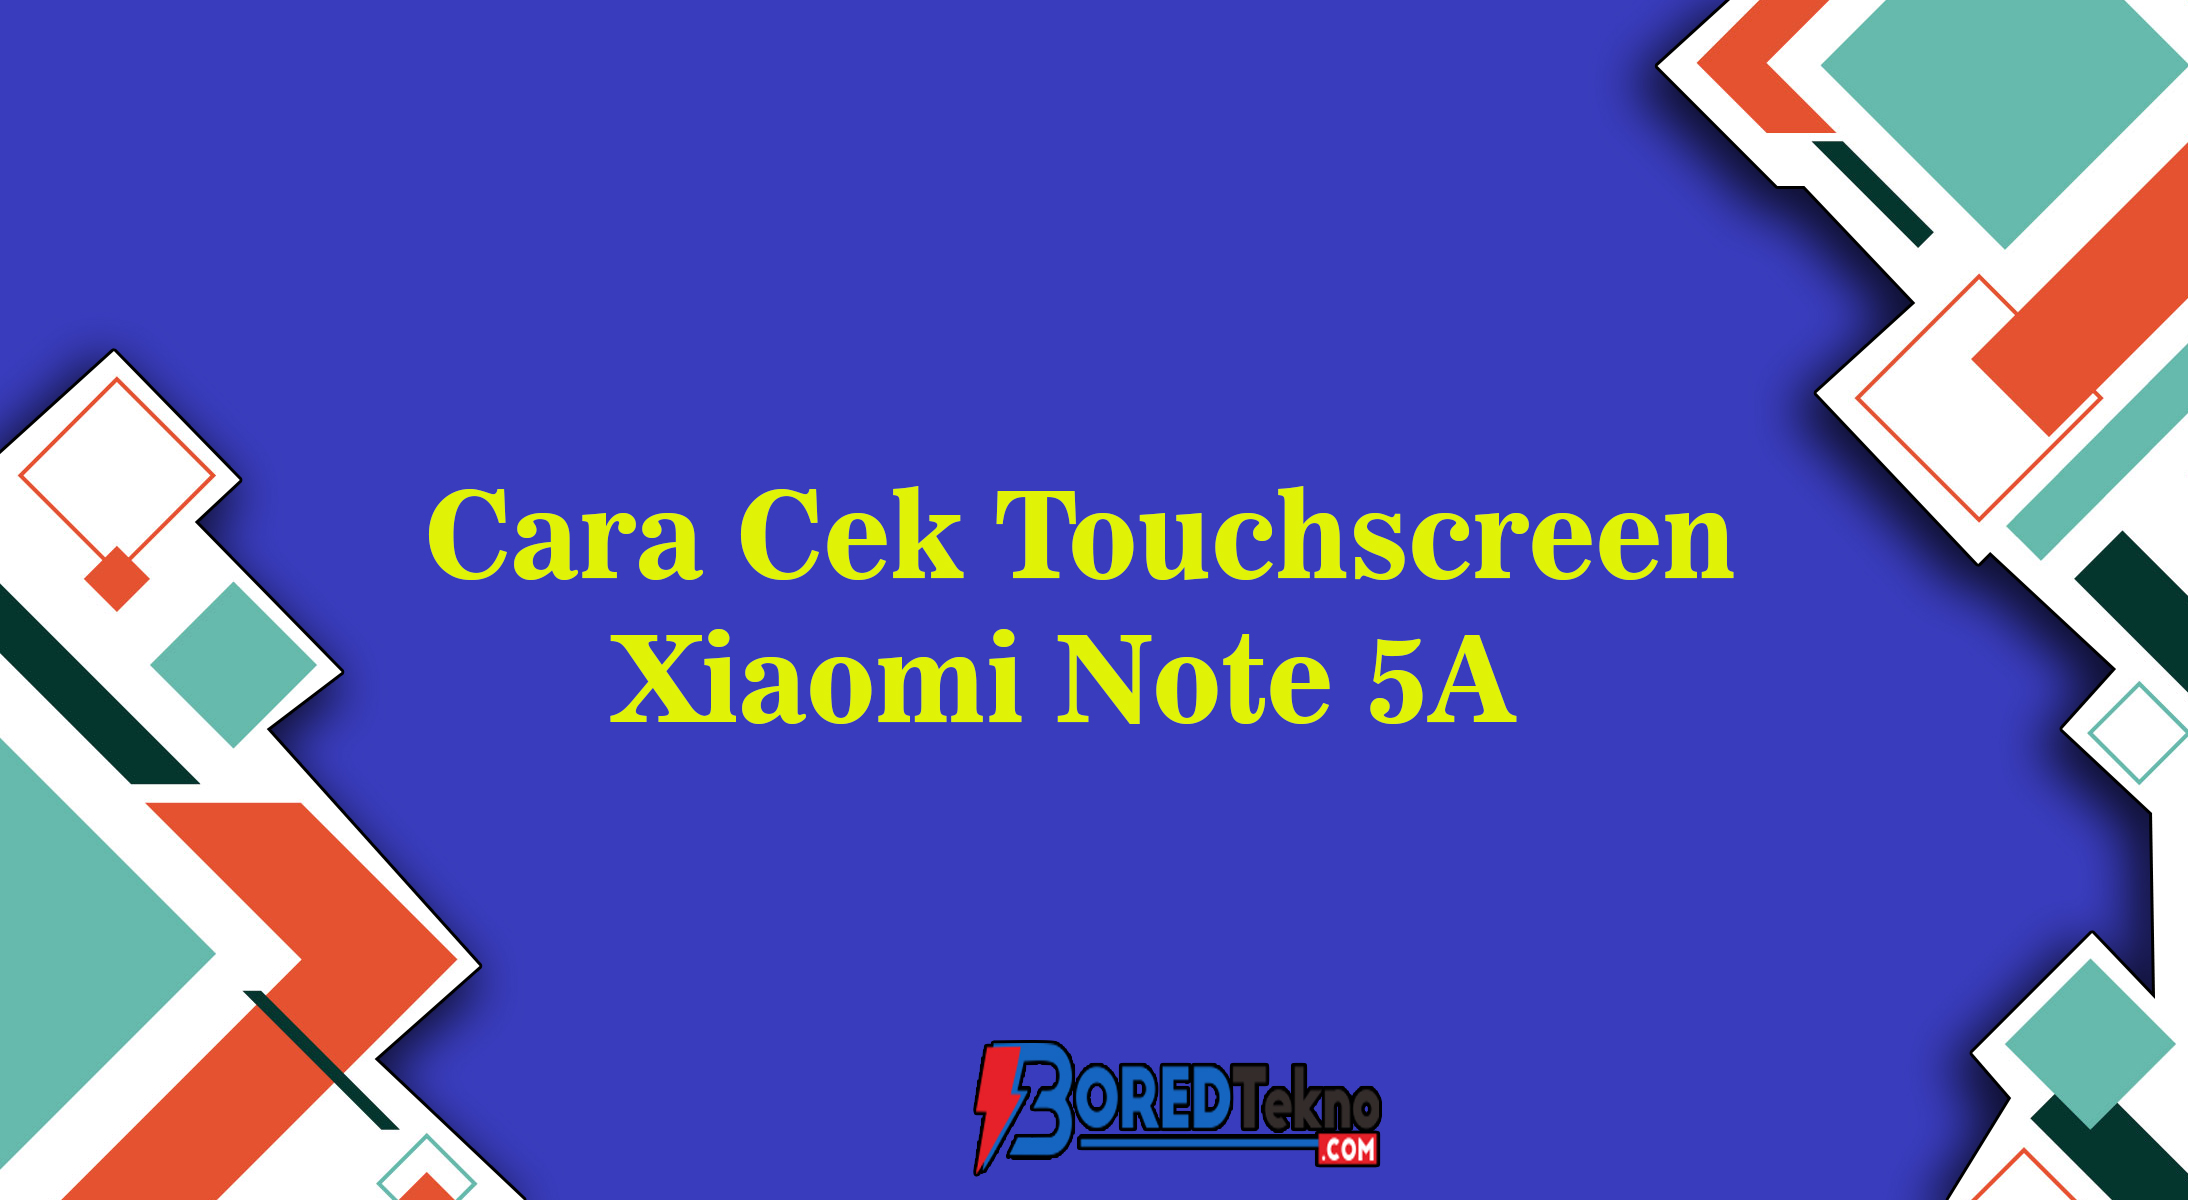 Cara Cek Touchscreen Xiaomi Note 5A